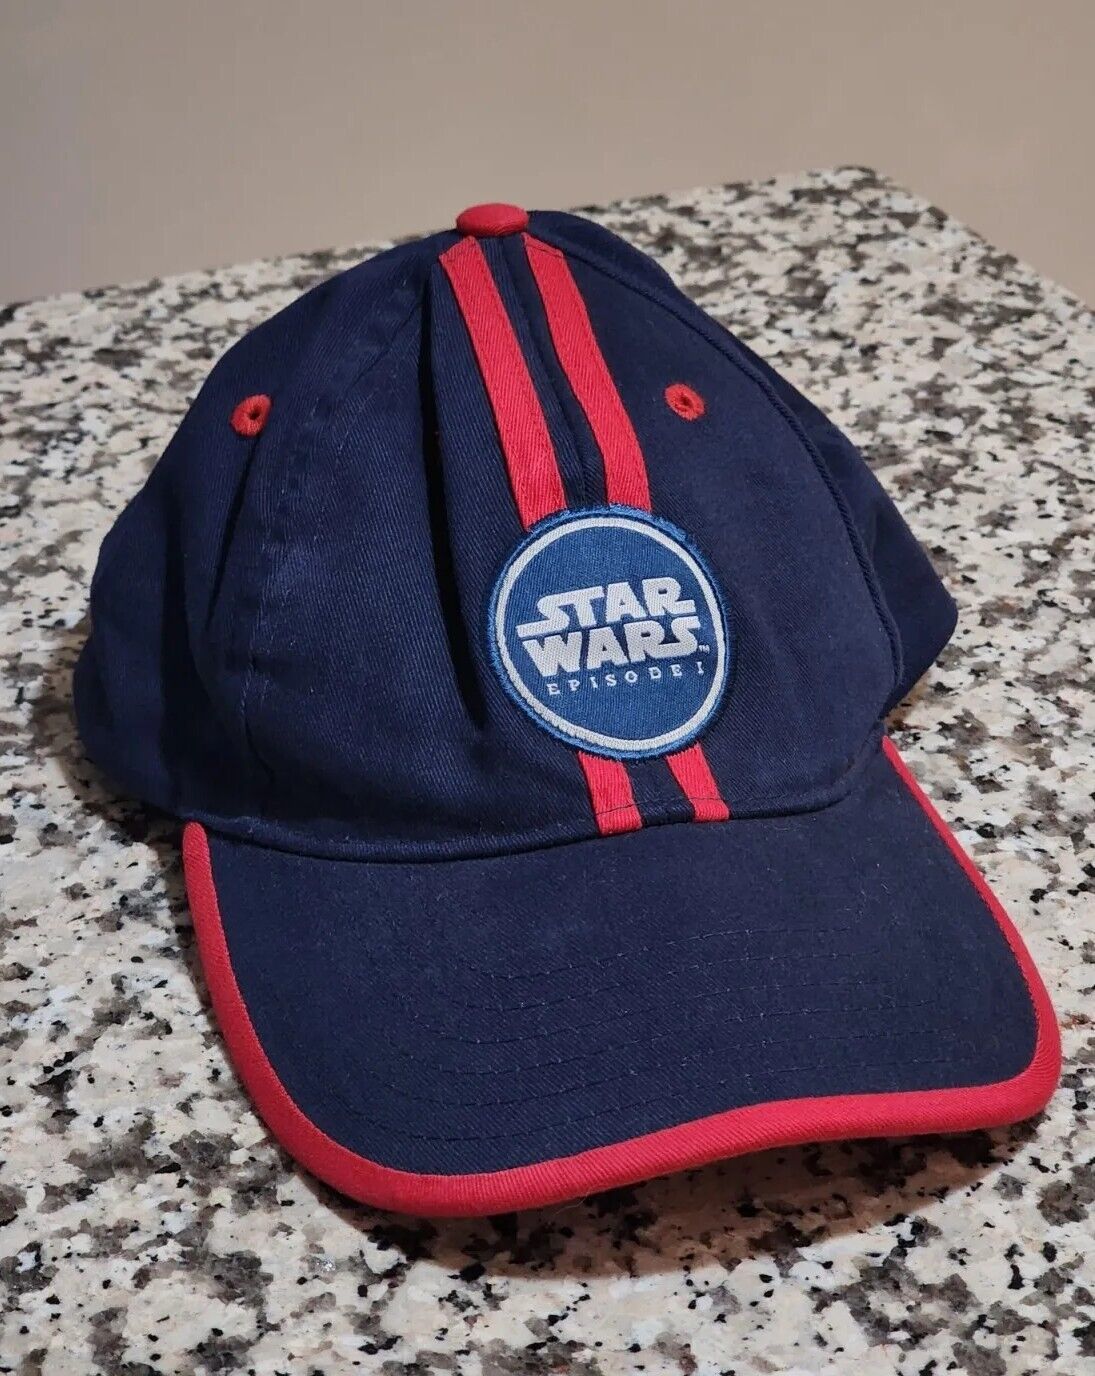 VTG Star Wars Episode 1 Hat Strapback Adjustable 